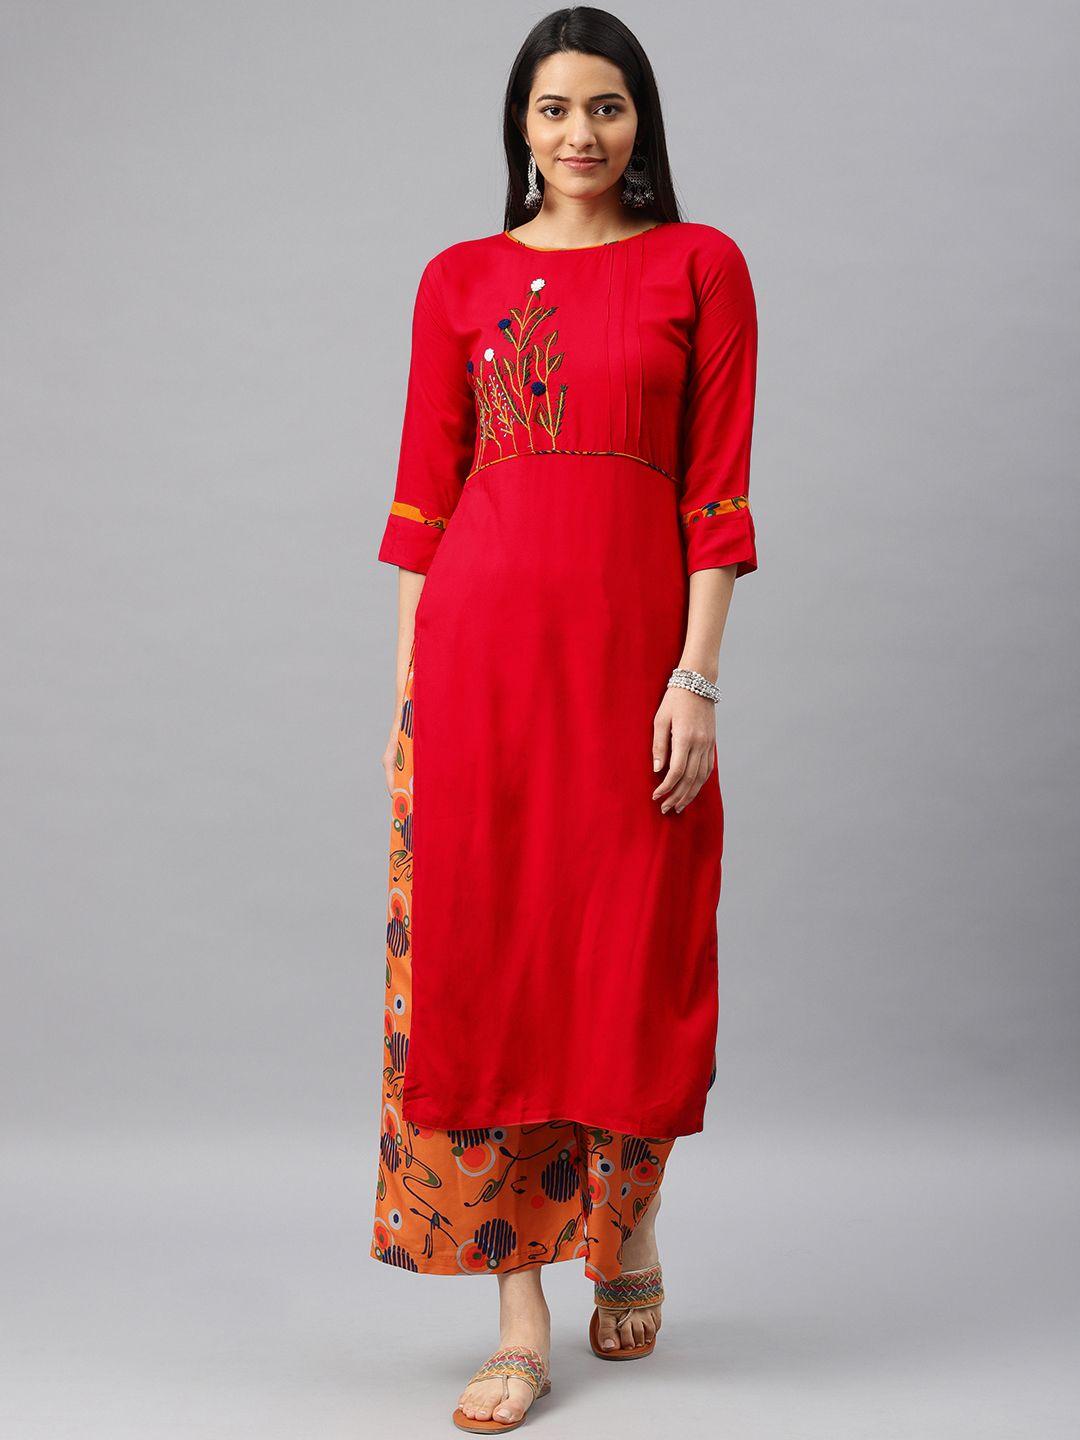 kvsfab women red & orange embroidered kurta with palazzos